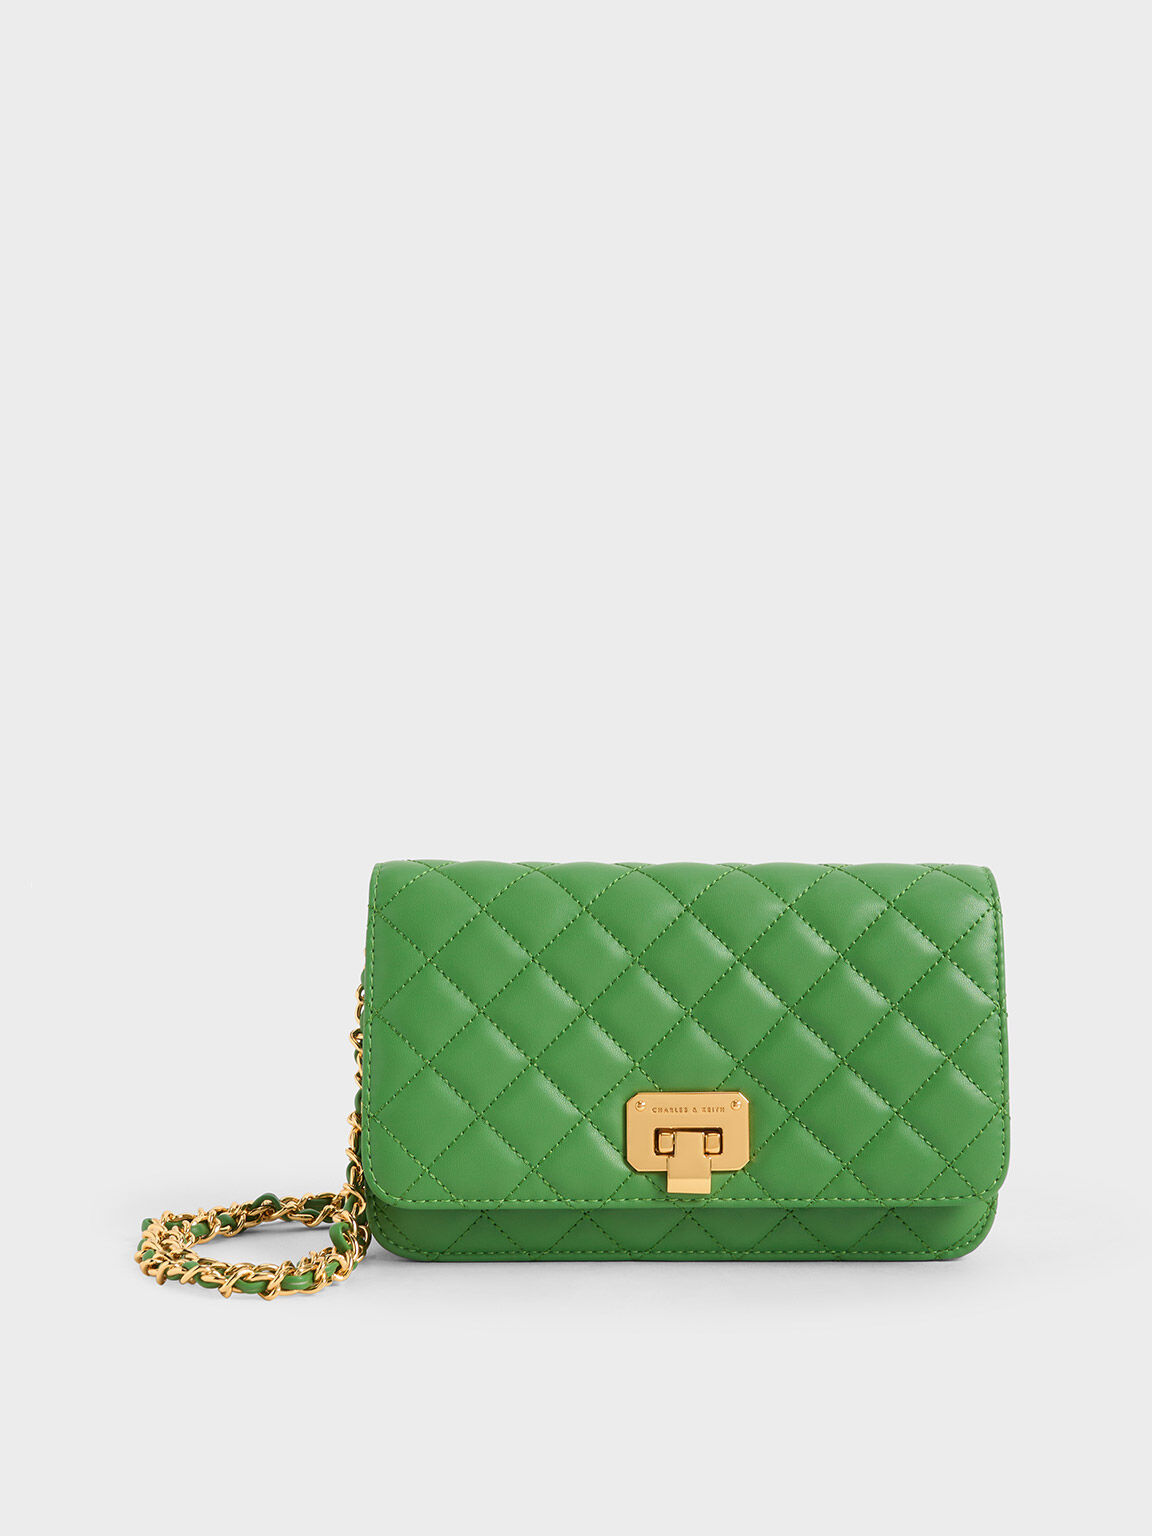 Buy YOYOWING Women Green Handbag PISTA Online @ Best Price in India |  Flipkart.com